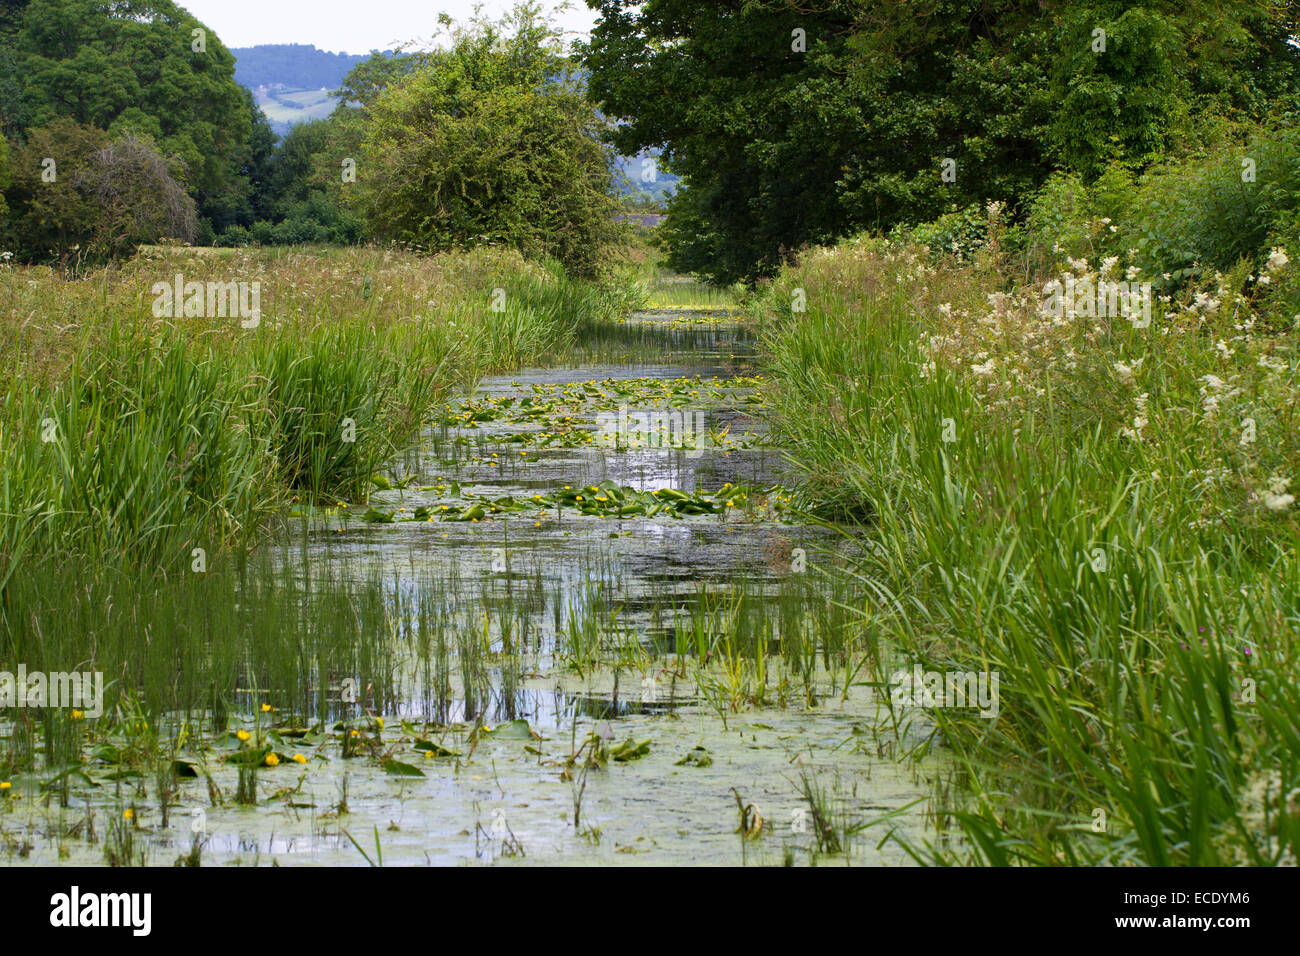 Partie de la gare désaffectée avec de l'eau jaune-lily (Nuphar lutea) floraison. Près de Powys, Pays de Galles, of Berriew. Juillet. Banque D'Images